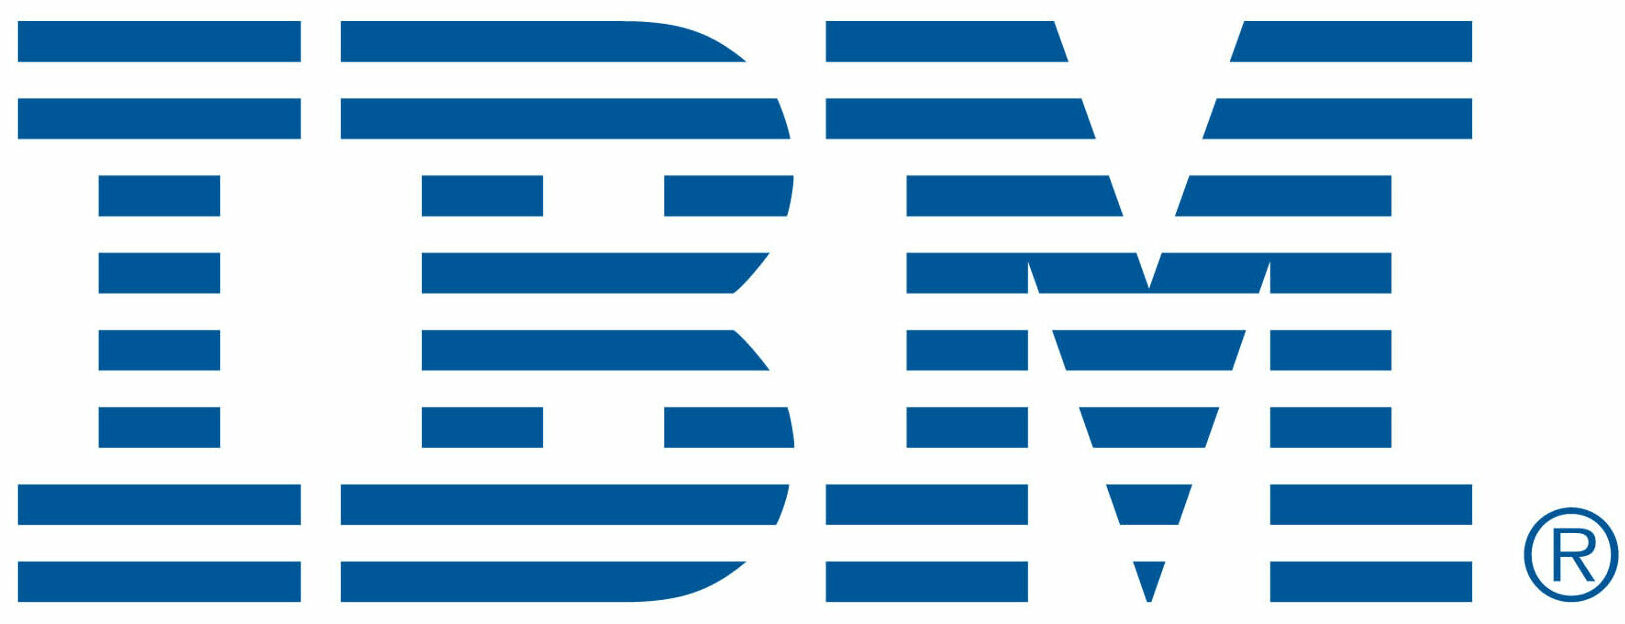 IBM_logo_in